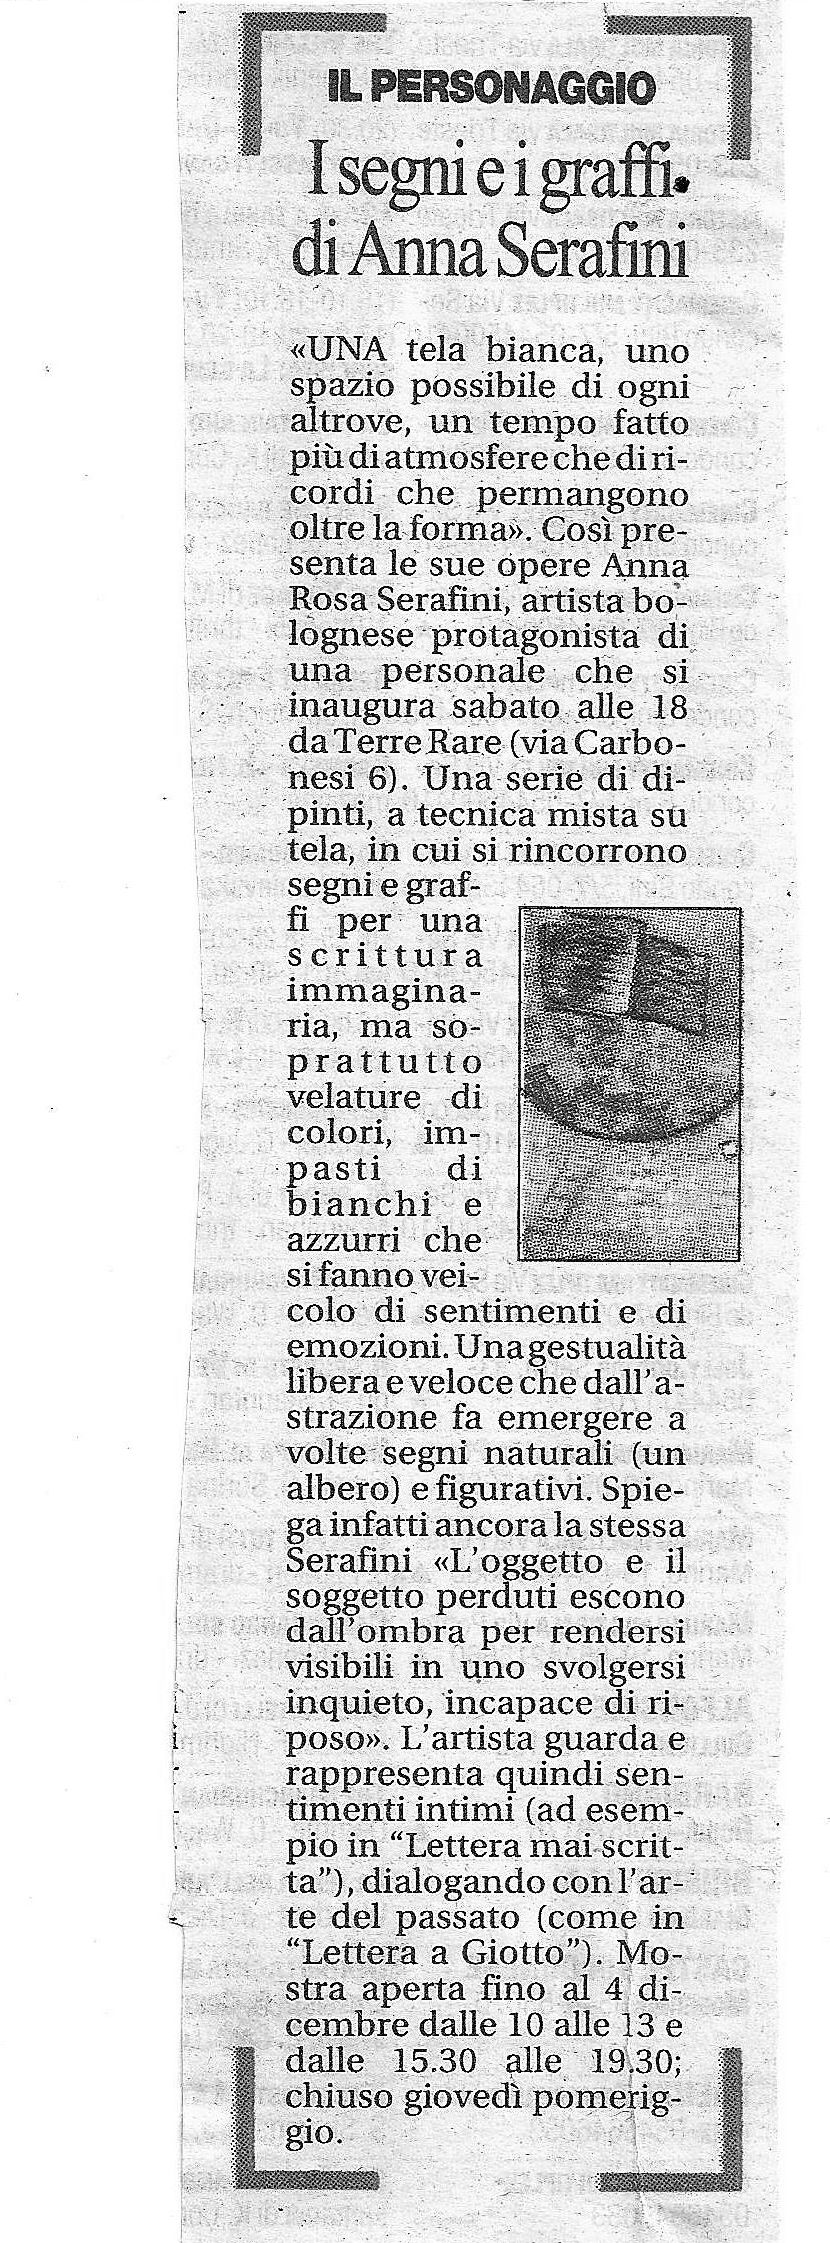 Serafini lavori 2003-2004, Repubblica Bologna Novembre 2004.jpg